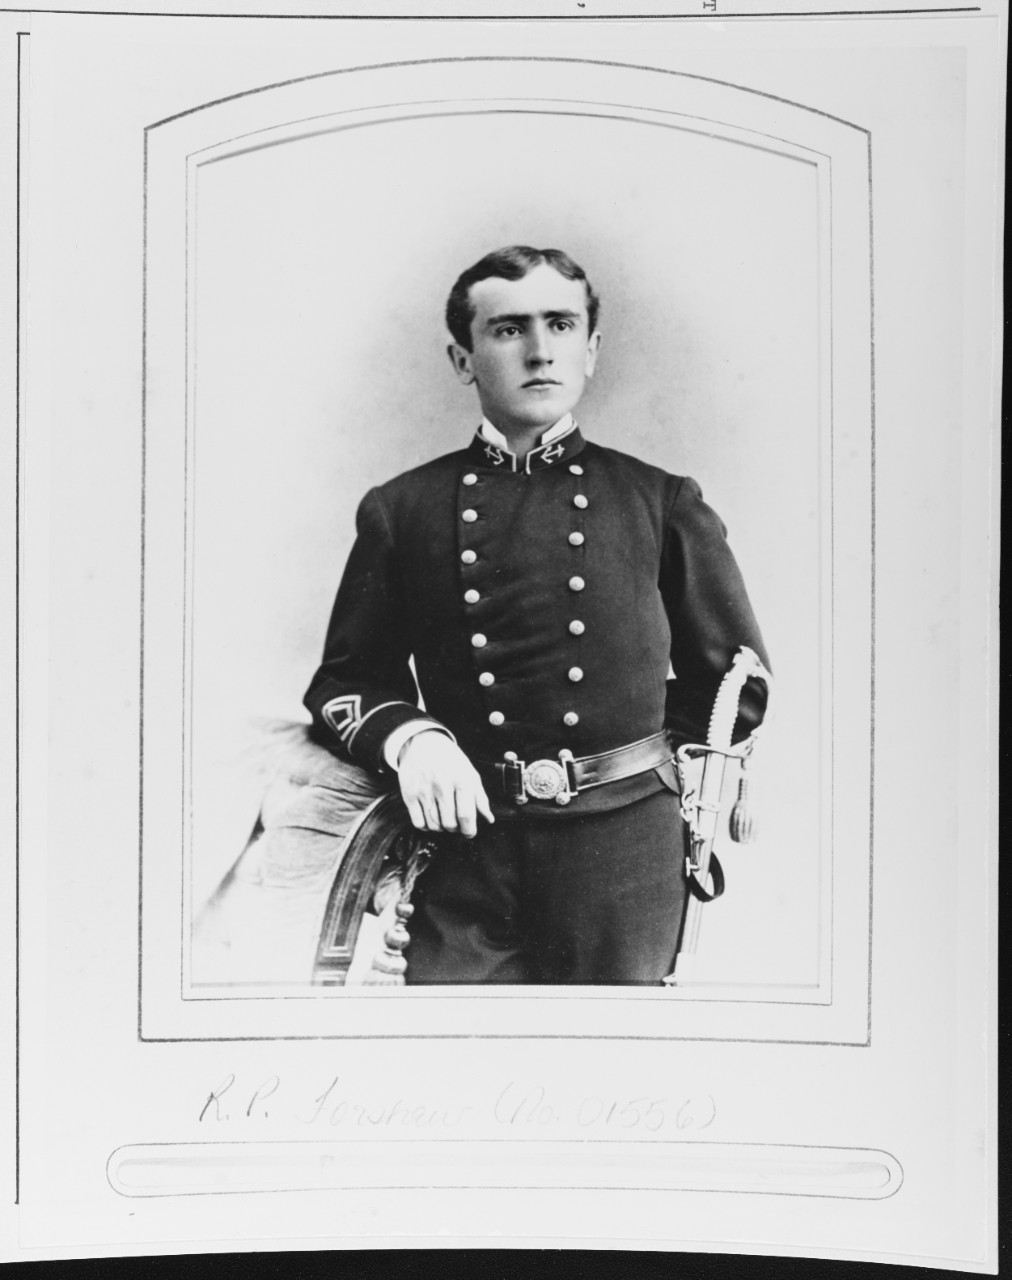 Commodore Robert Pierpont Foreshew, USN